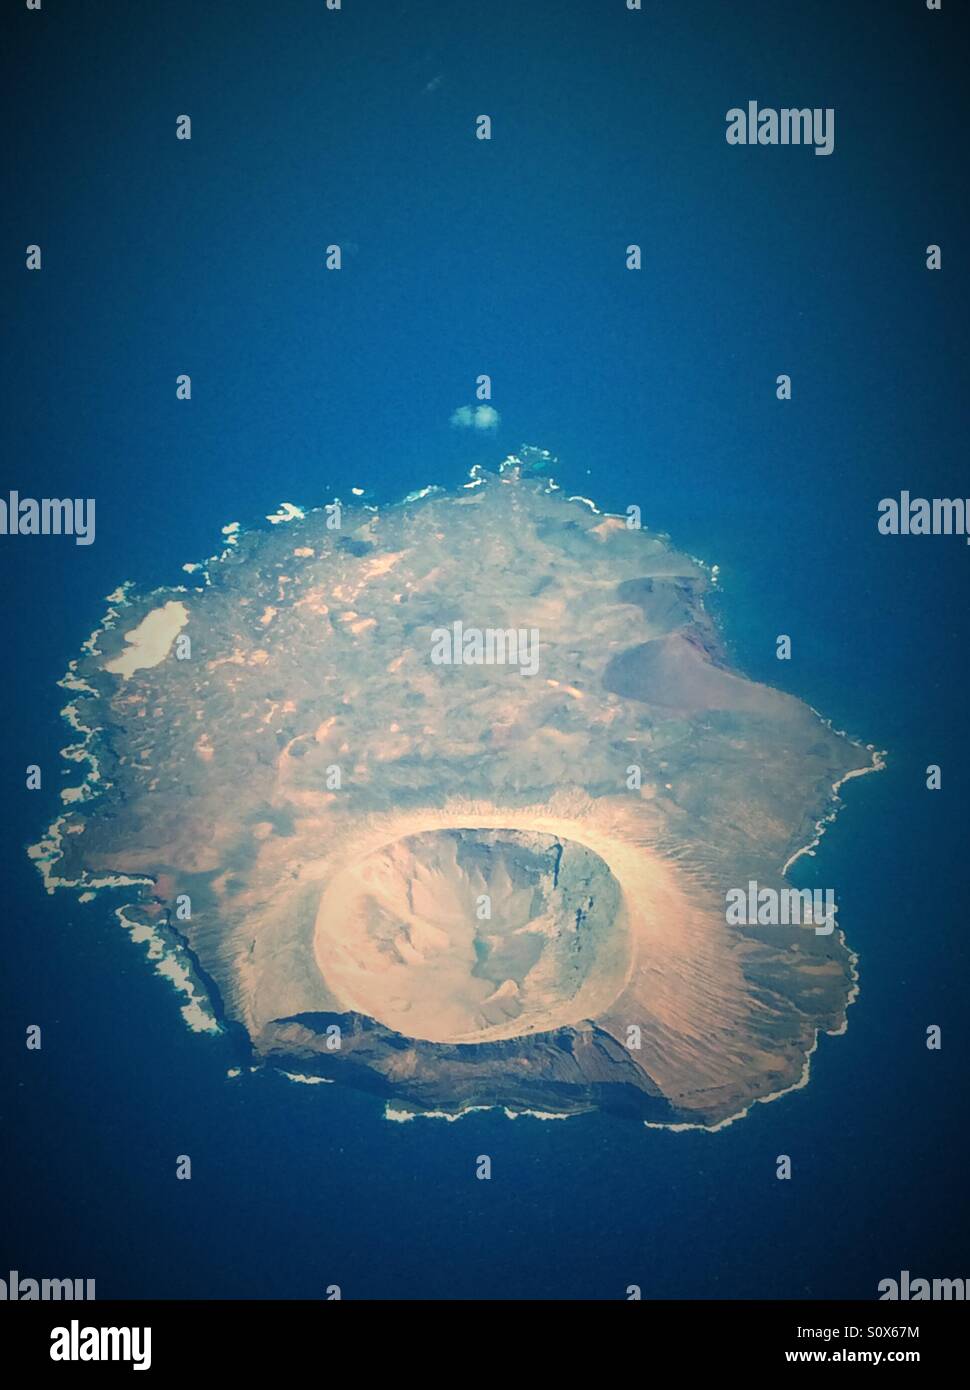 Isla de Alegranza near Lanzarote Stock Photo